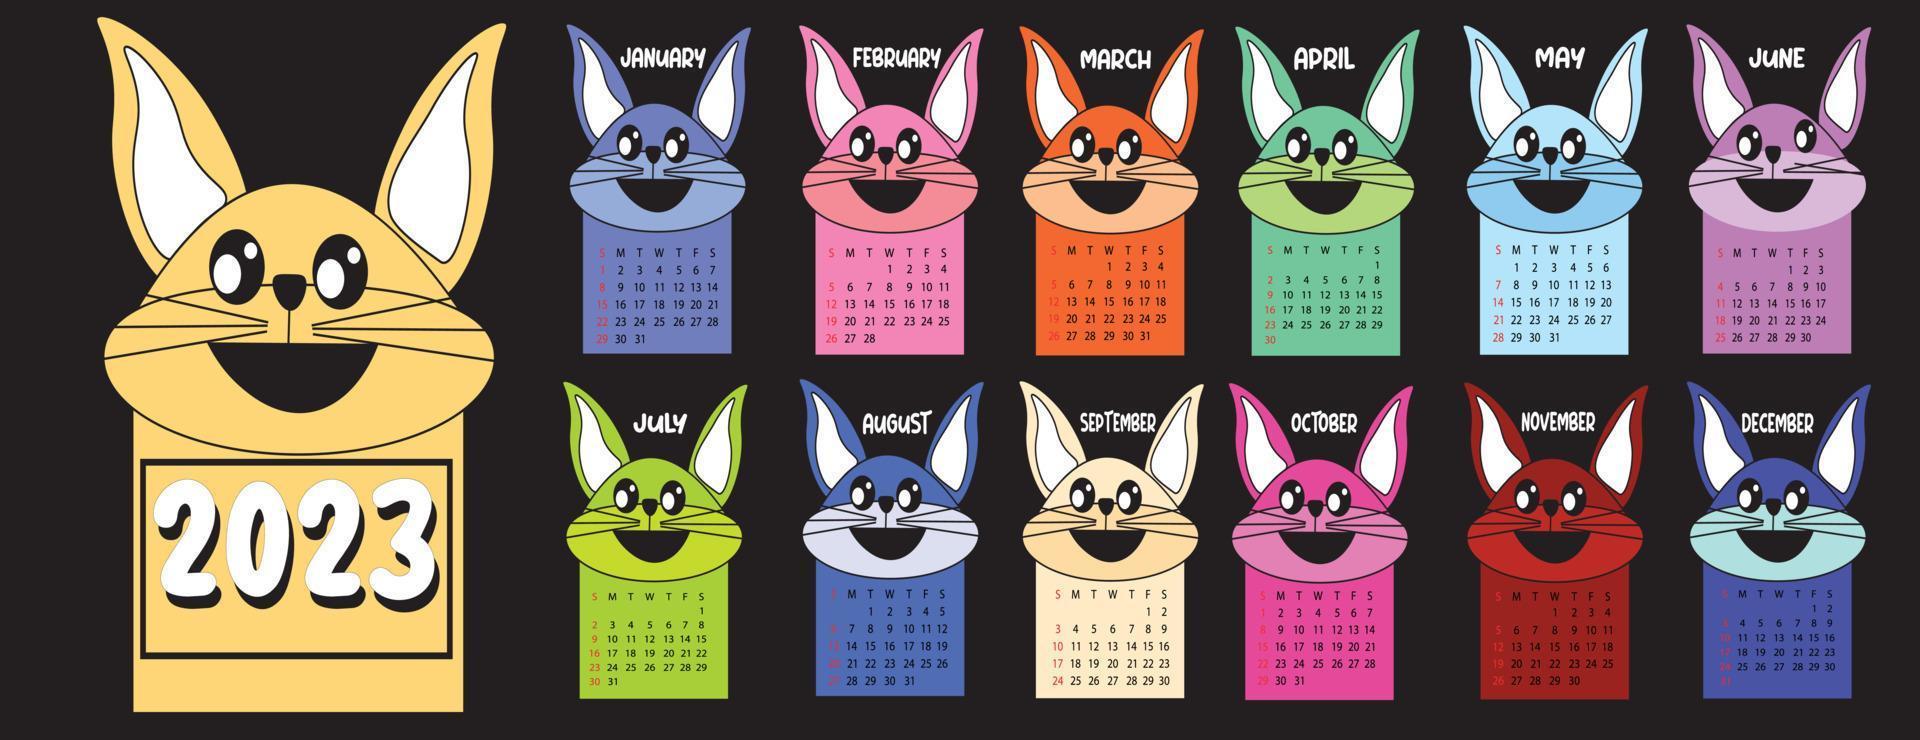 kanin kalender mall för 2023. vertikal design med ljus och söt enkel illustrationer av söt kanin. vektor